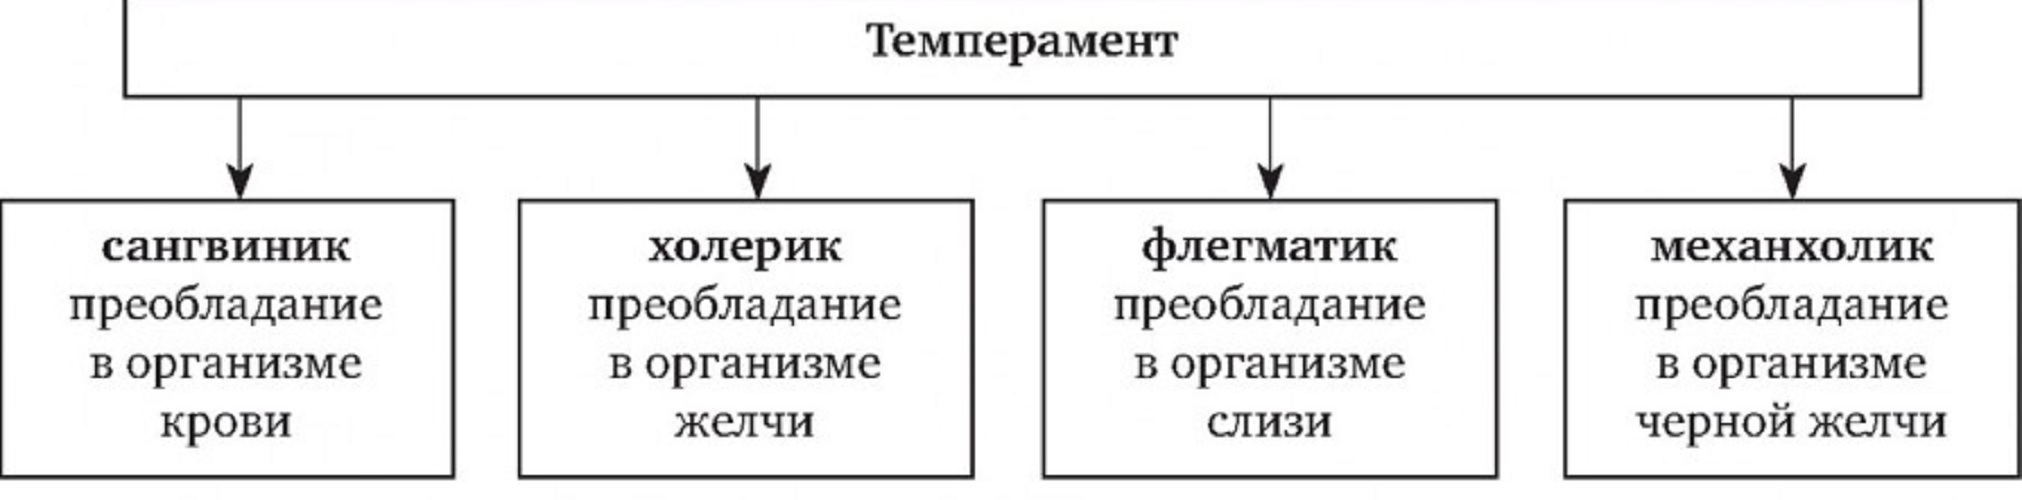 Краткая схема темпераментов по Гиппократу